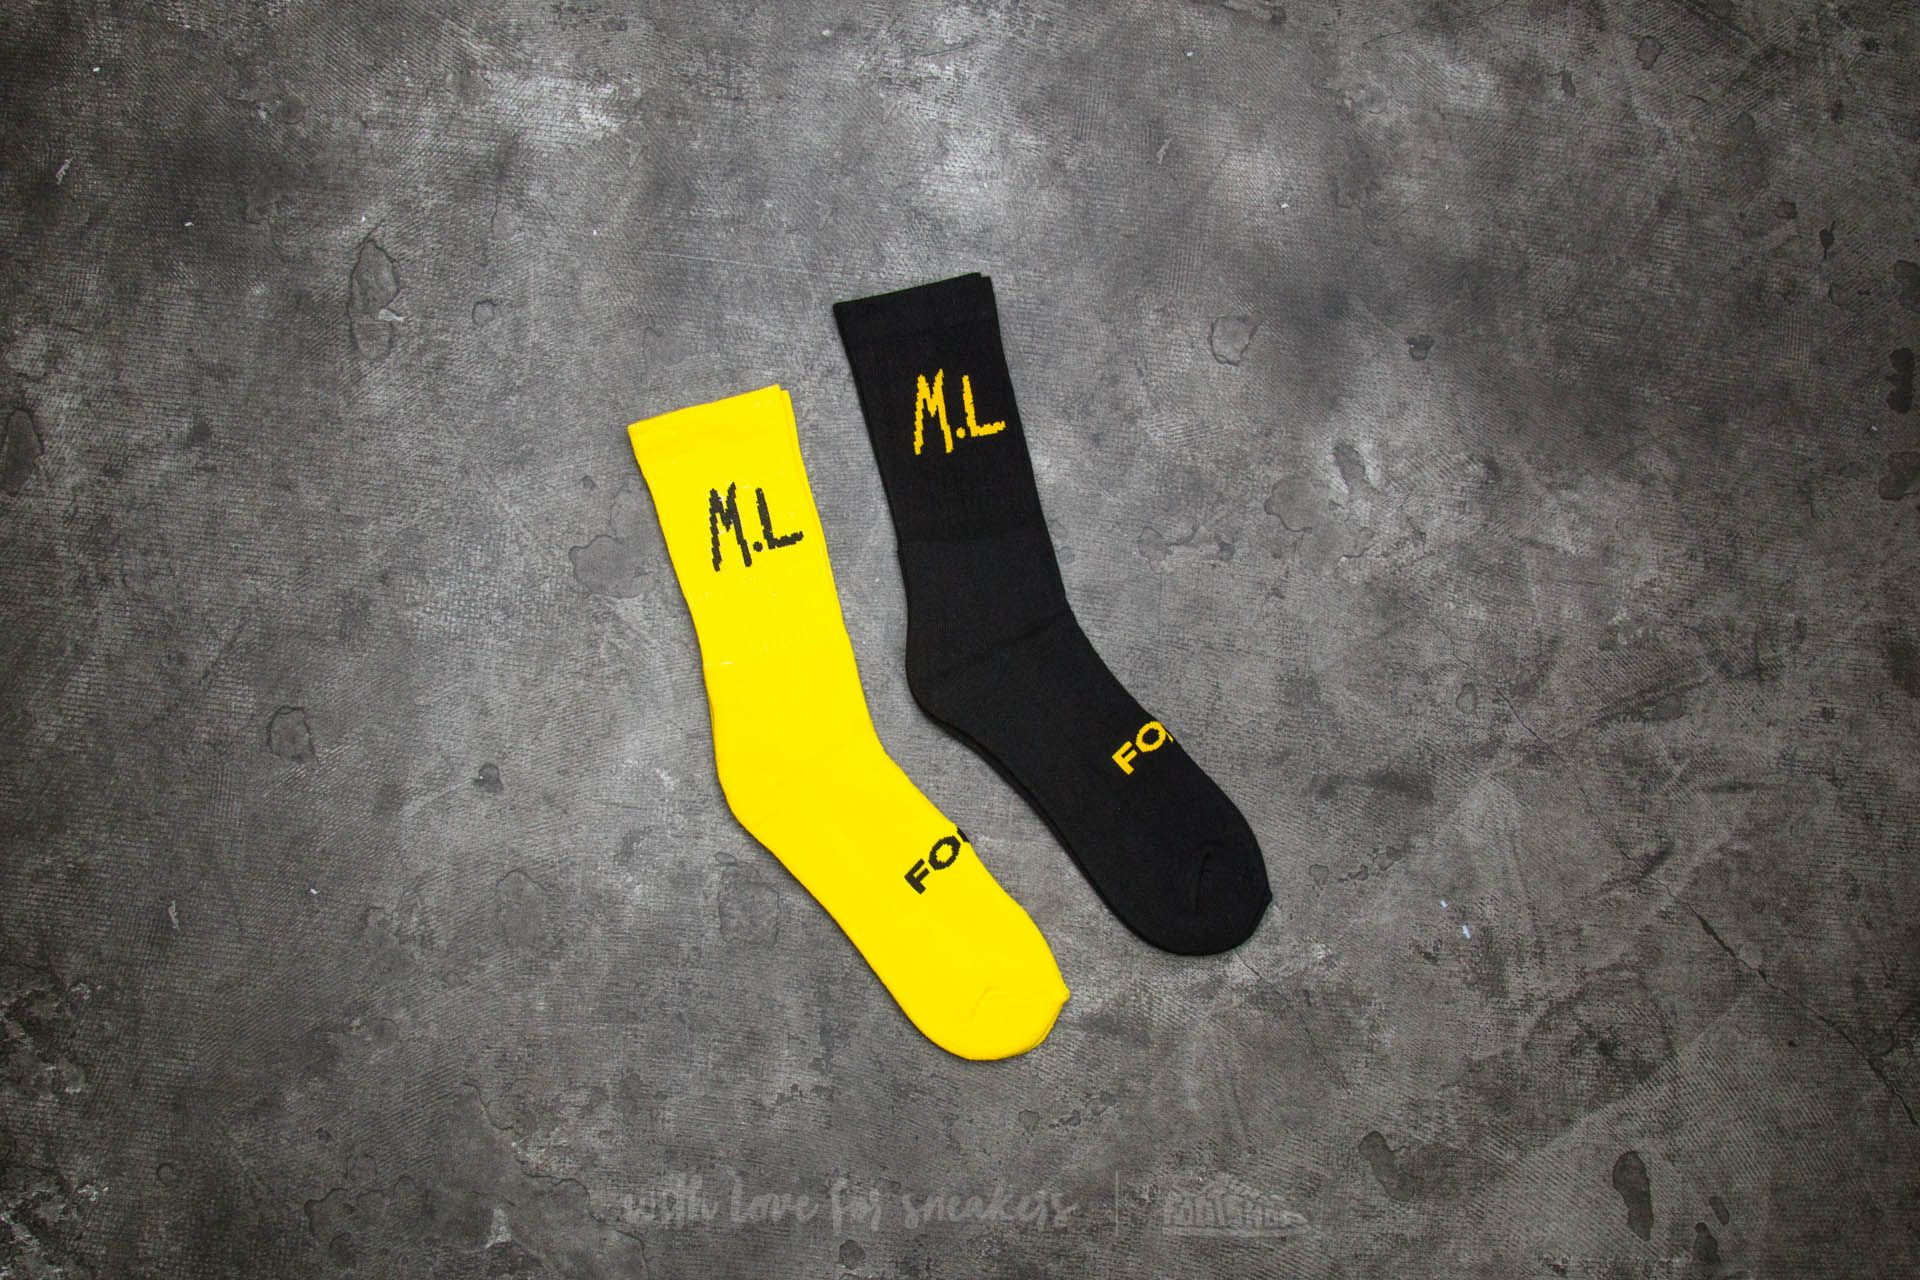 Calzetti Footshop x UKNOW x M.L Crew Sock Yellow/ Black